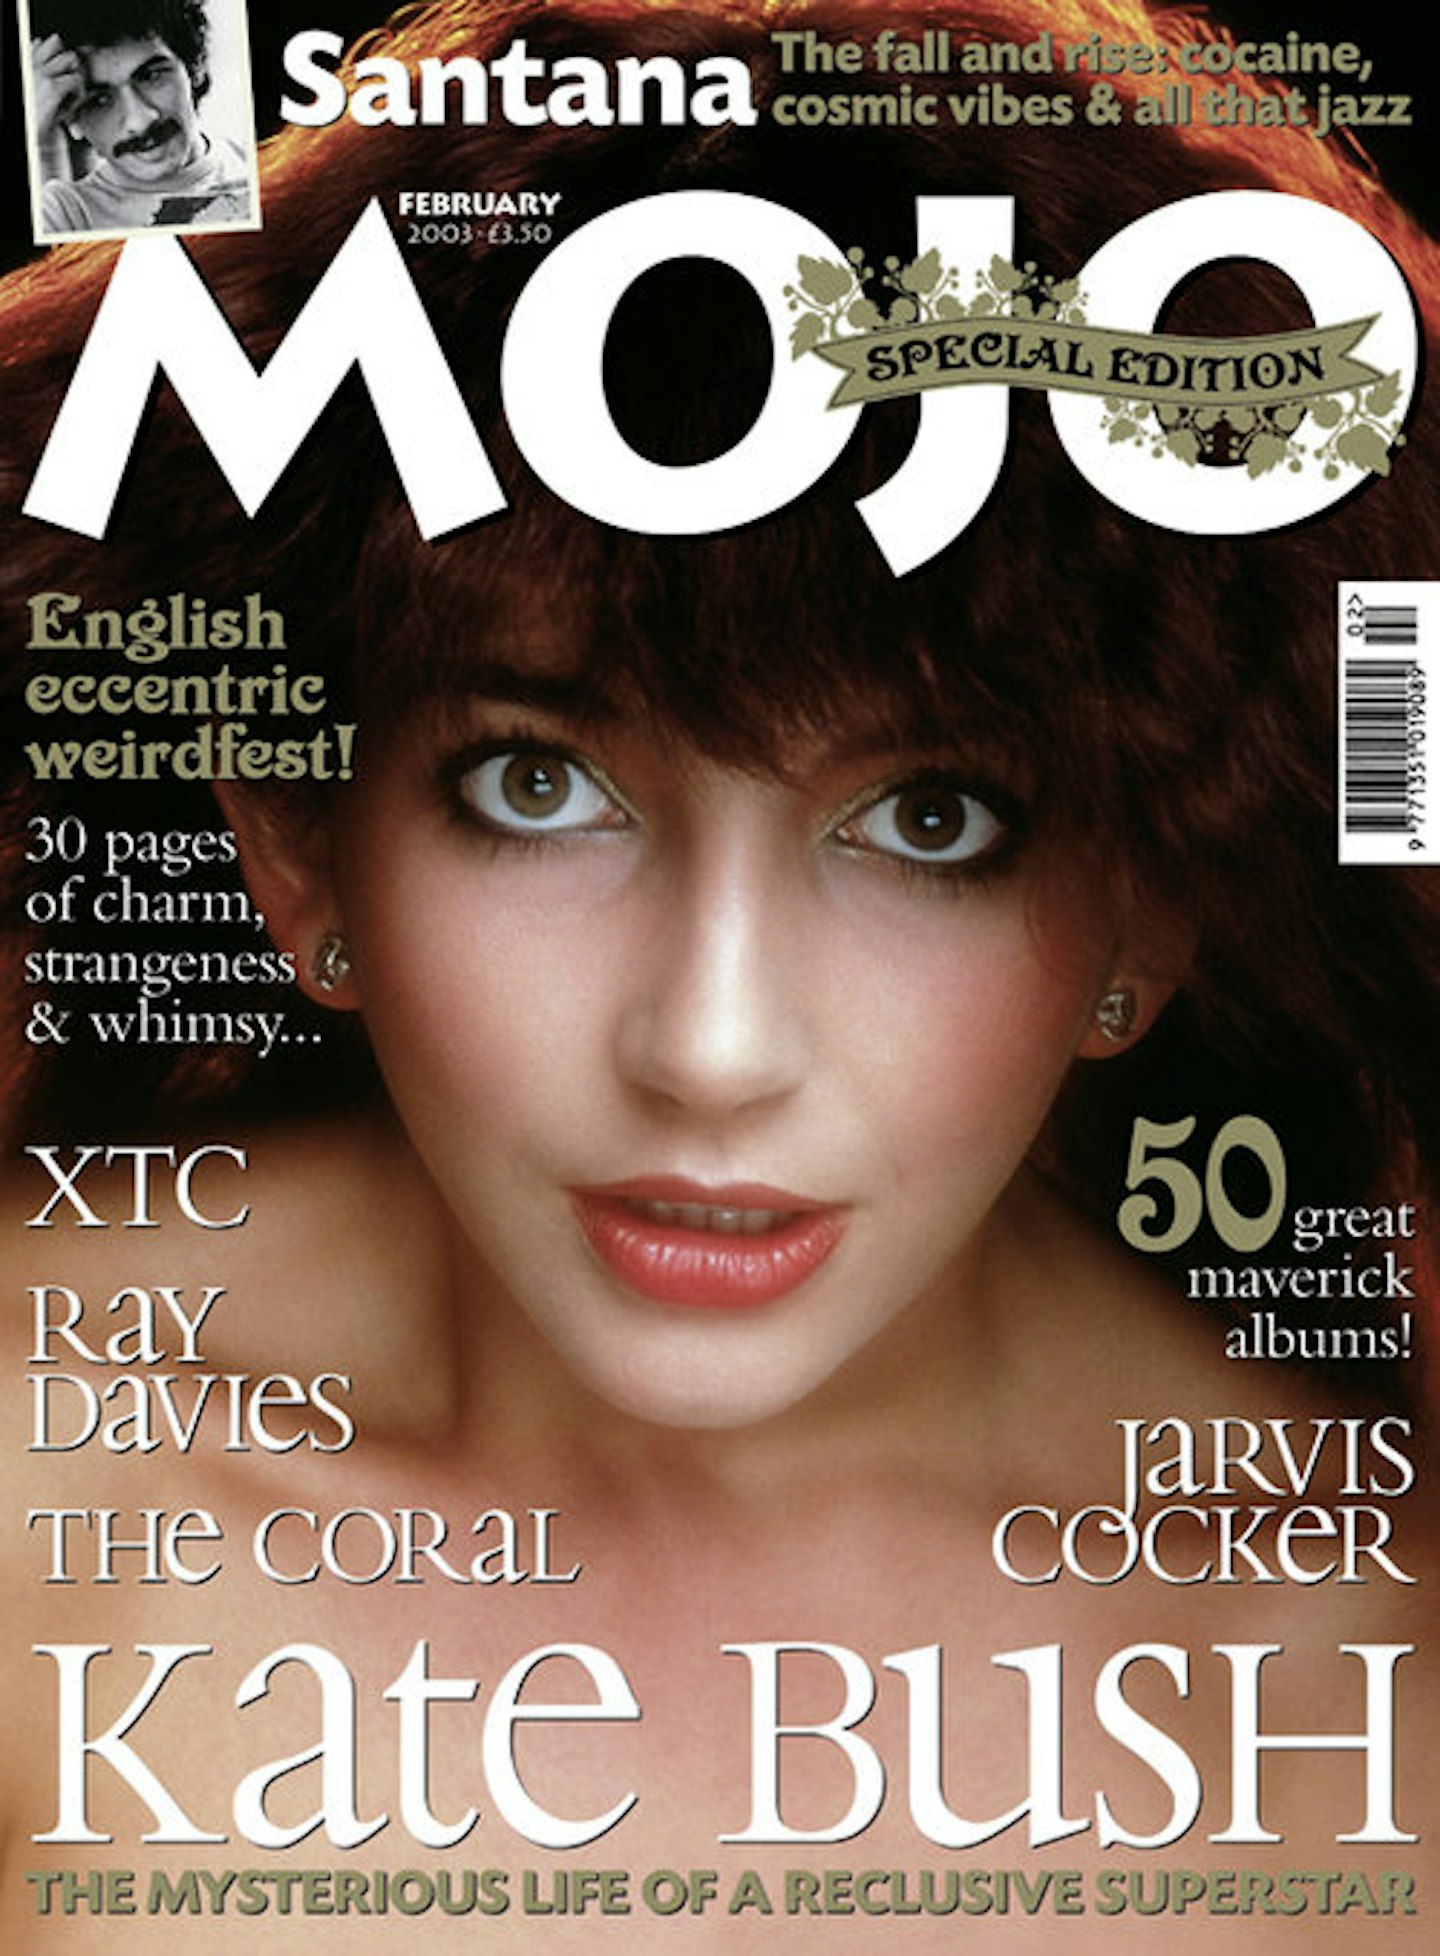 MOJO Issue 111 / February 2003